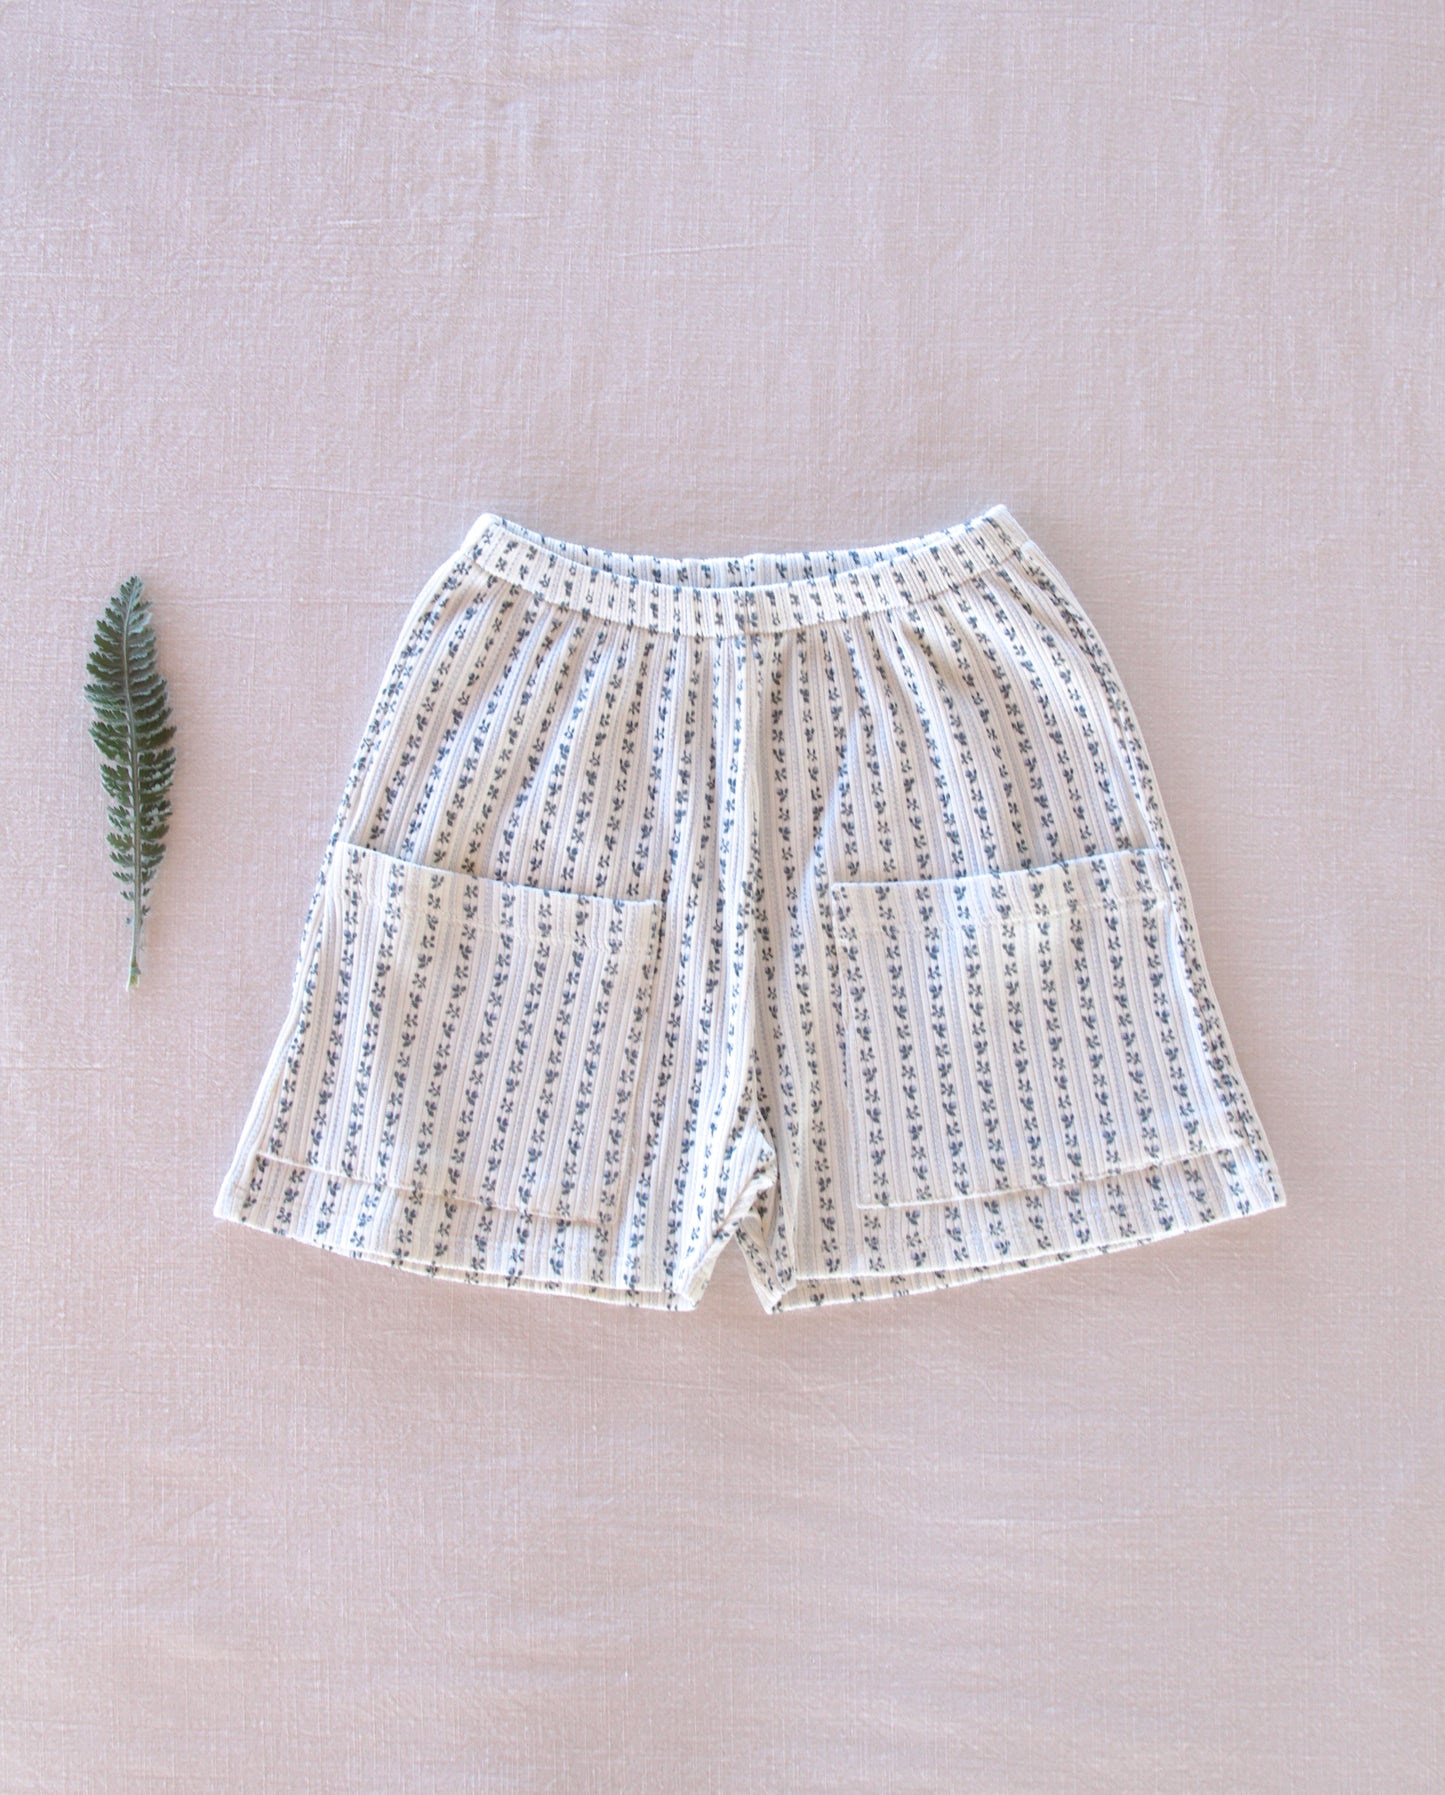 ribbed pocket shorts . wallpaper lace floral